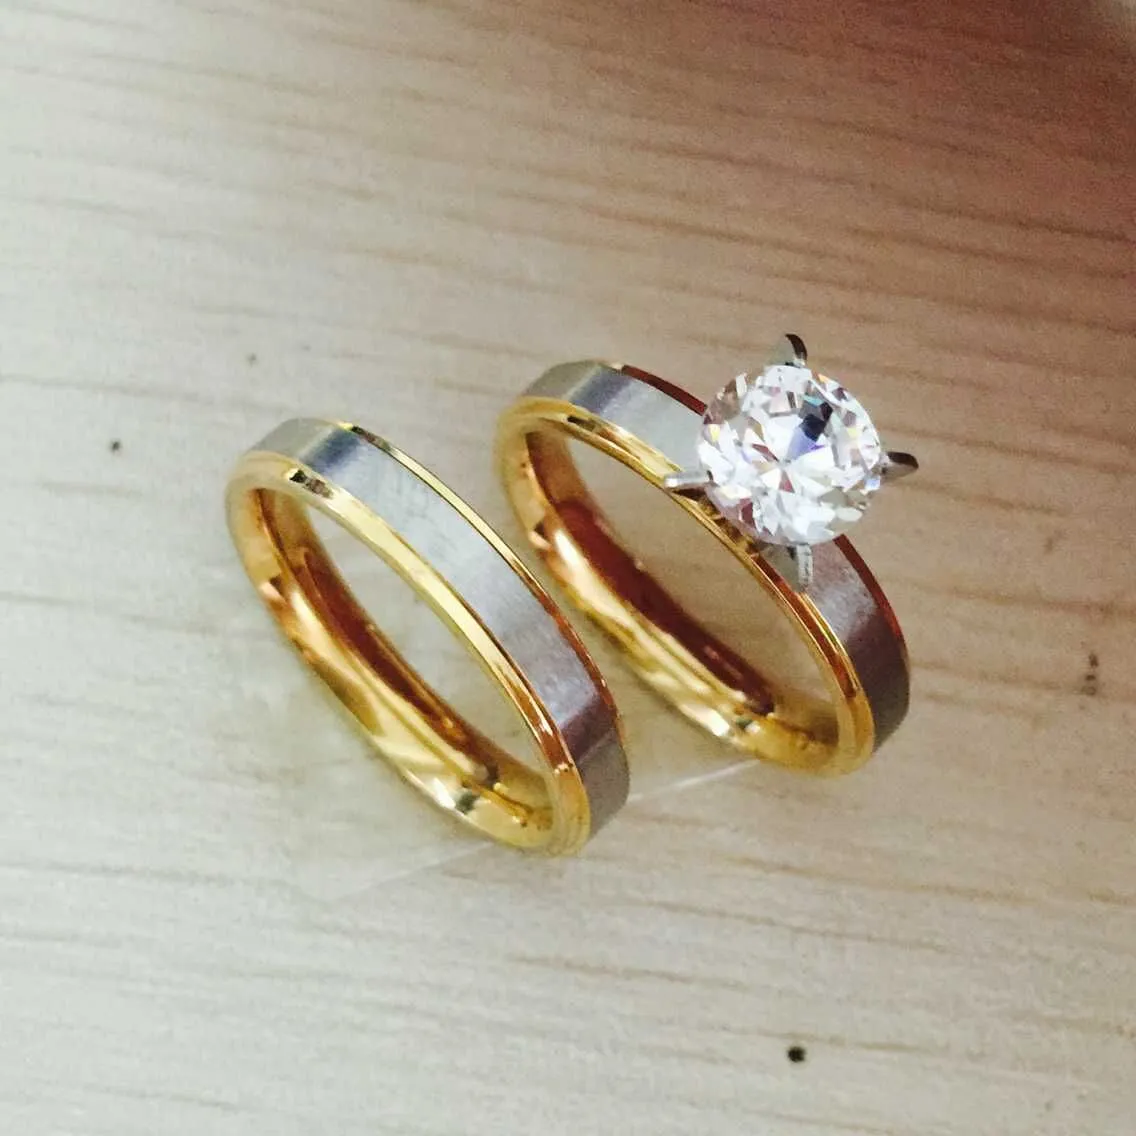 عالية الجودة 4MM 18K الذهب والفضة مطلي كبير الزركون تشيكوسلوفاكيا الماس زوجين خاتم الزفاف الفرقة مجموعة عشاق الفولاذ المقاوم للصدأ حلقة للمرأة